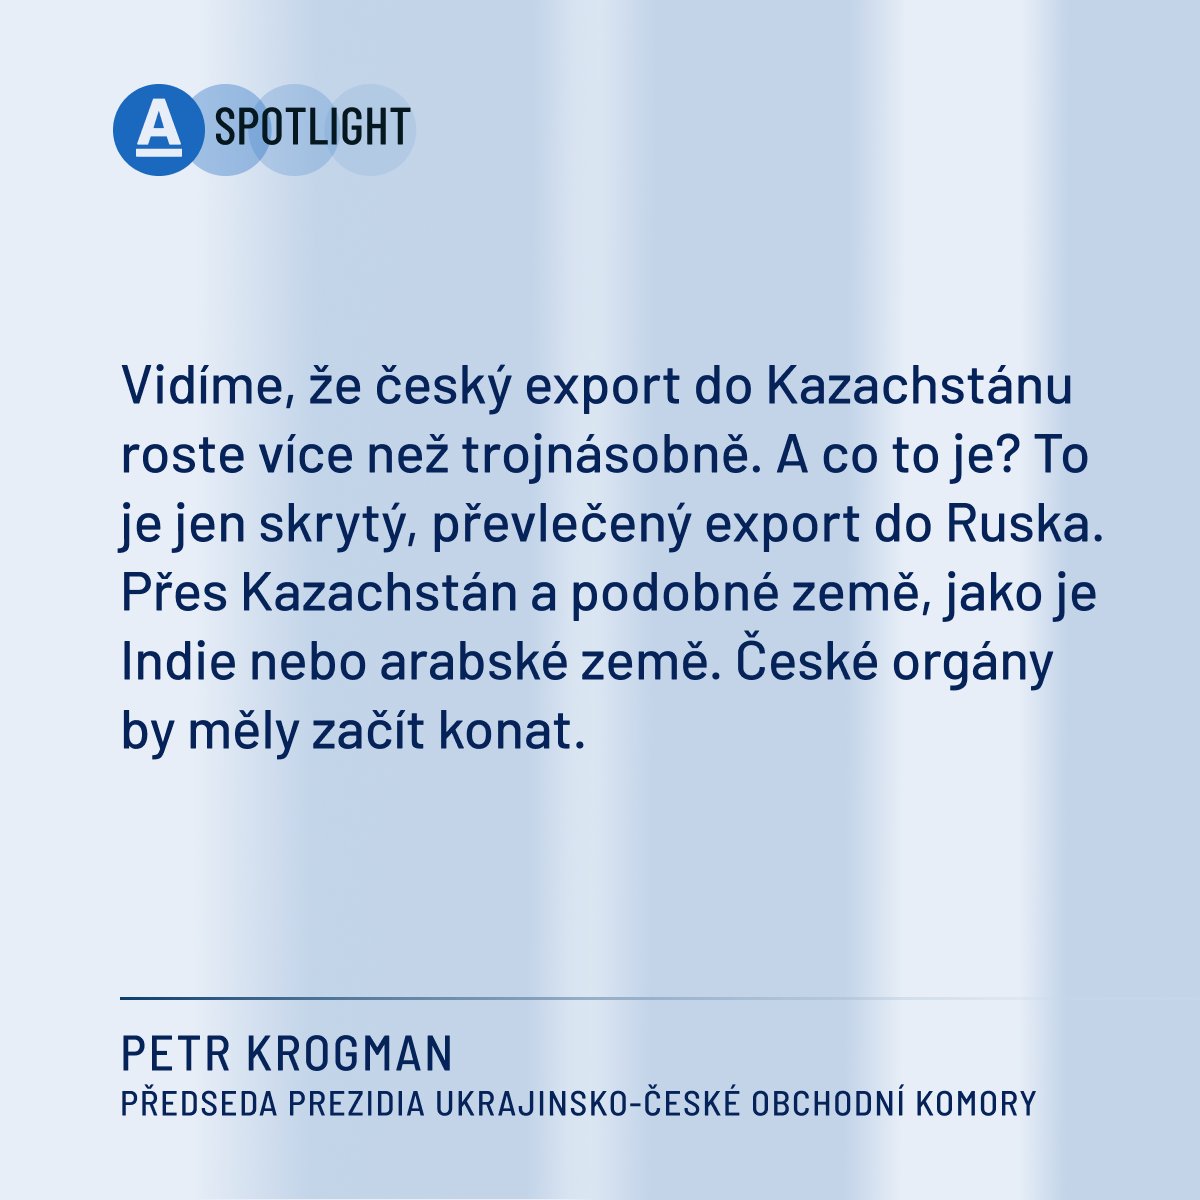 🔵 Podle předsedy prezidia Ukrajinsko-české obchodní komory Petra Krogmana se někteří podnikatelé stále vyhýbají sankcím vůči Rusku. Třeba zvýšeným exportem zboží do Kazachstánu a Indie. 🎙️ Celý rozhovor 👉 aktln.cz/TVvgLw 👈 @Aktualnecz @SpotlightCz @SvetlanaWit